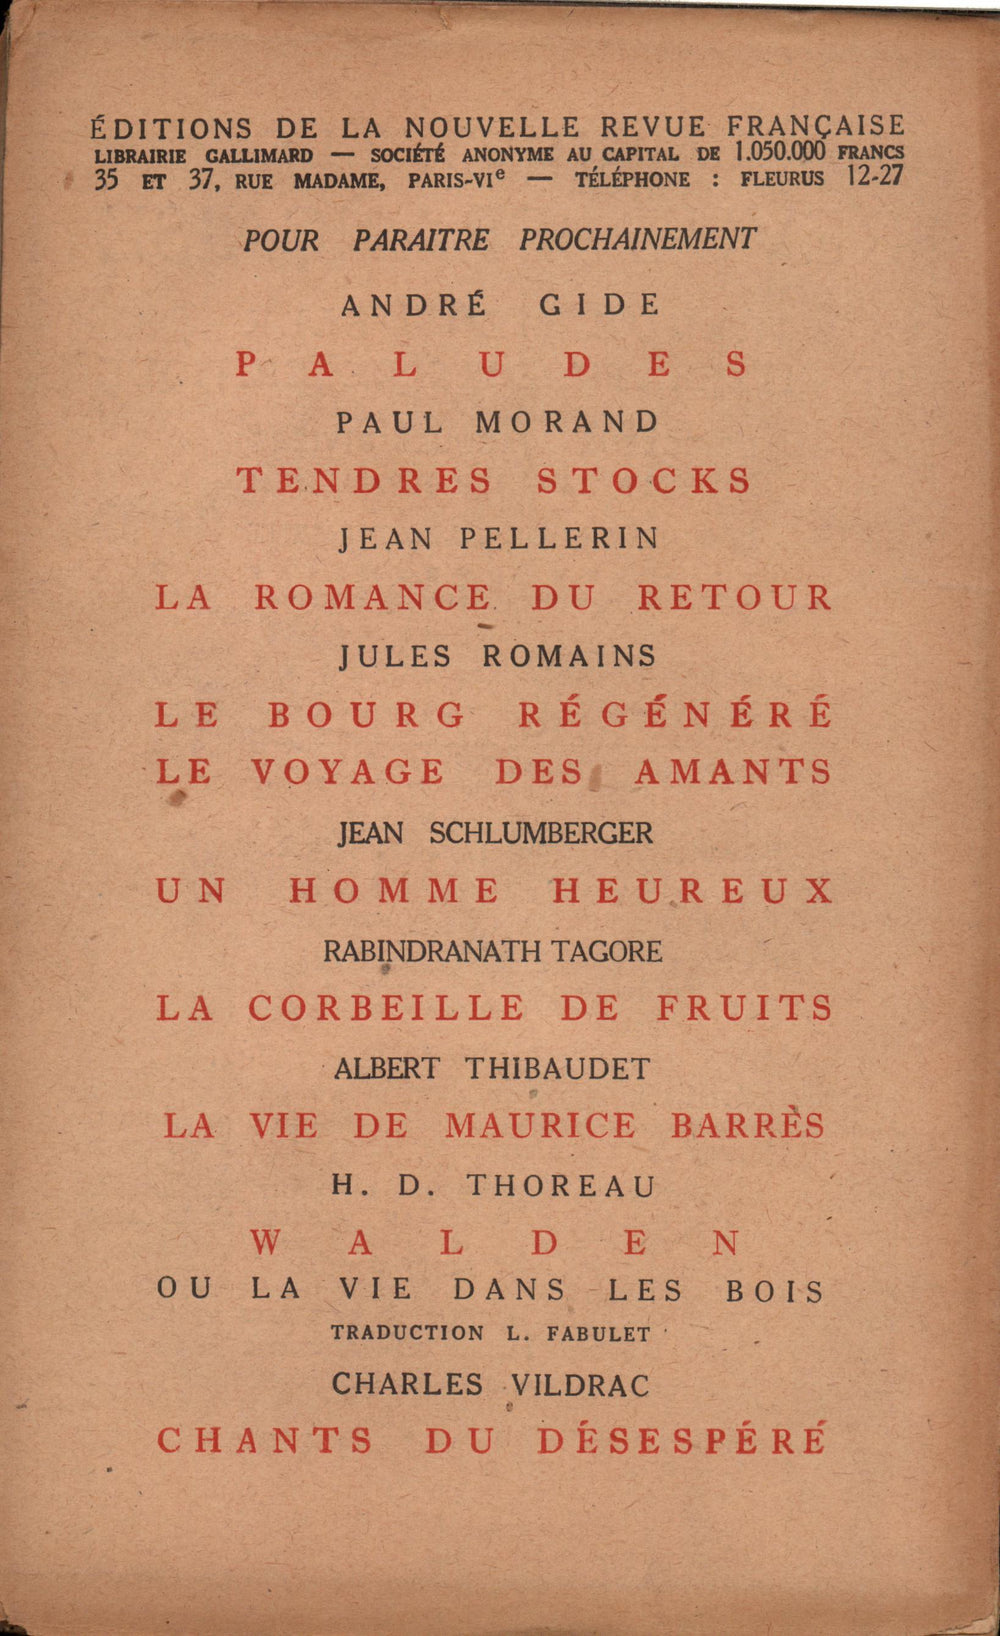 La Nouvelle Revue Française N' 88 (Janvier 1921)